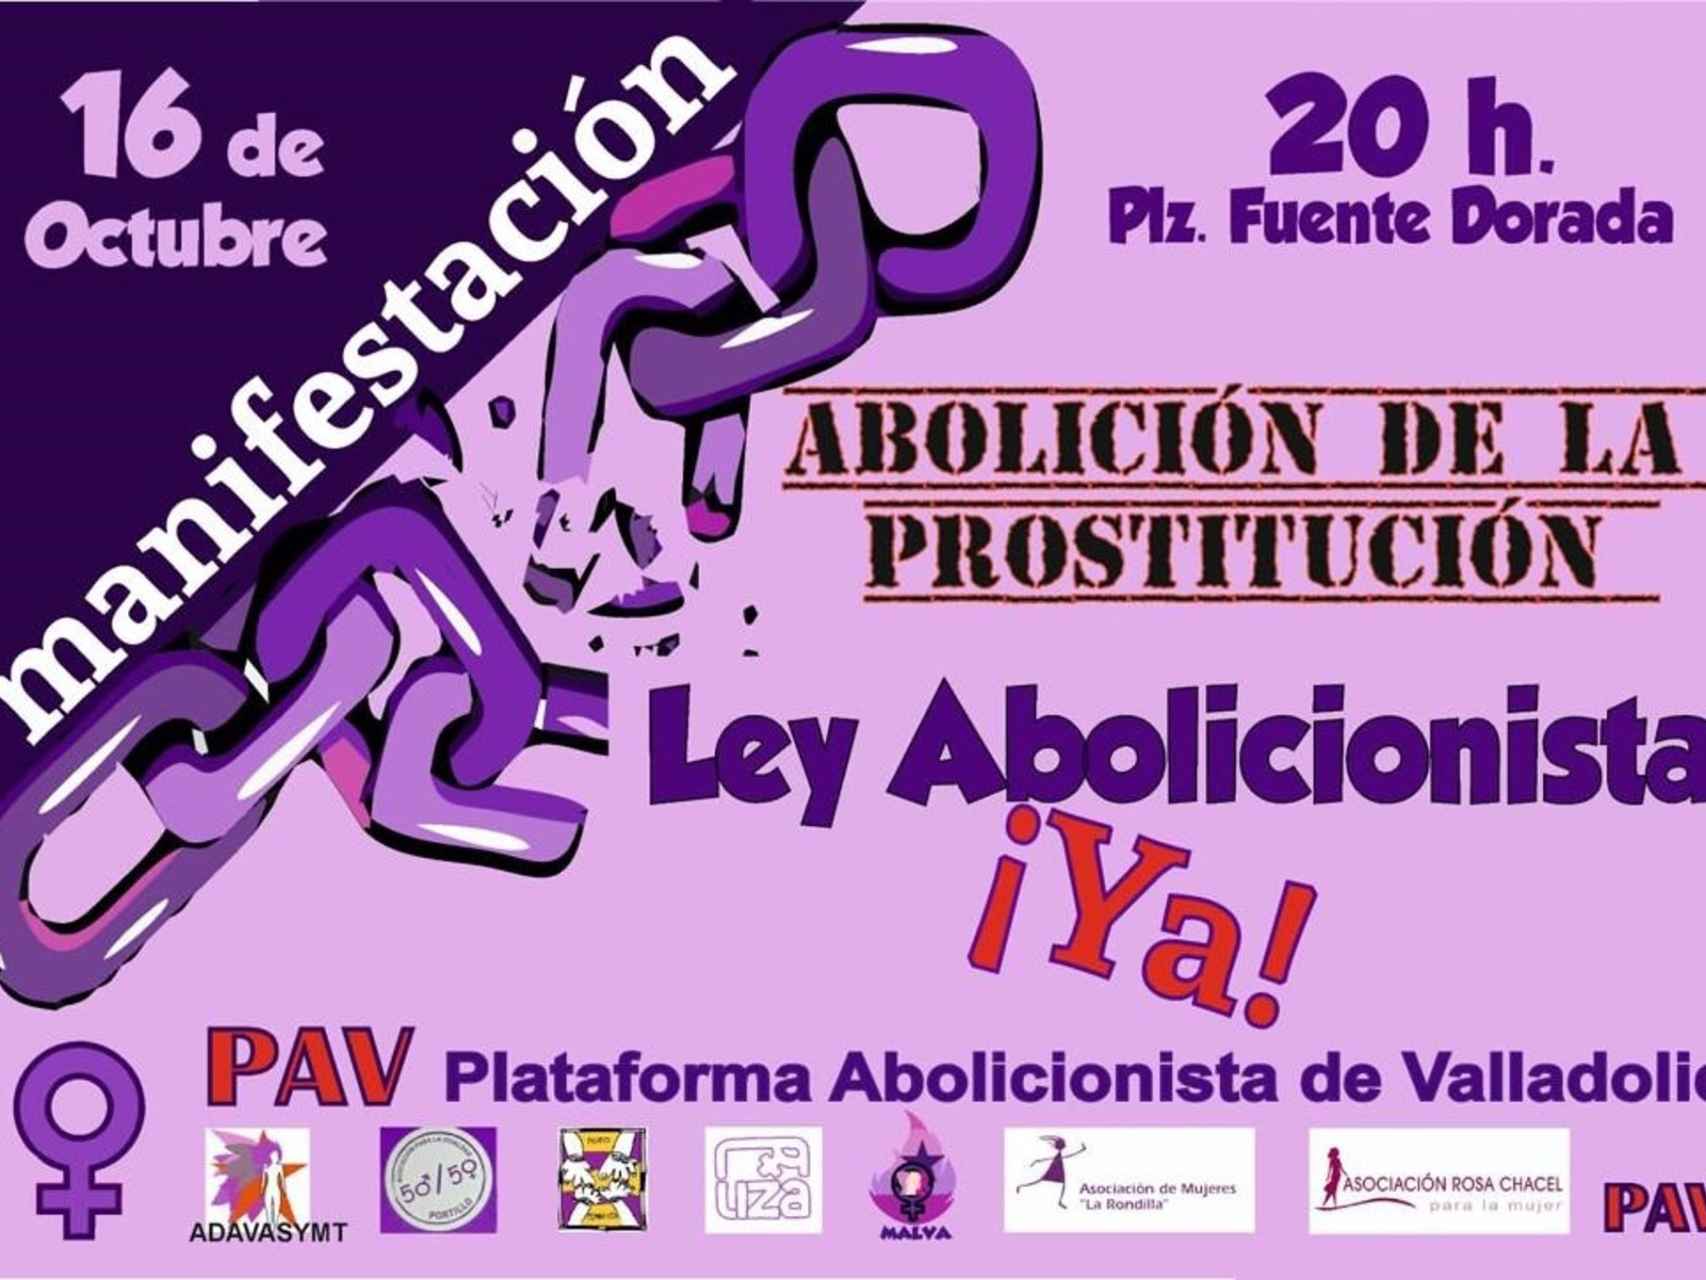 Cartel de la convocatoria en Valladolid para la manifestación contra la prostitución